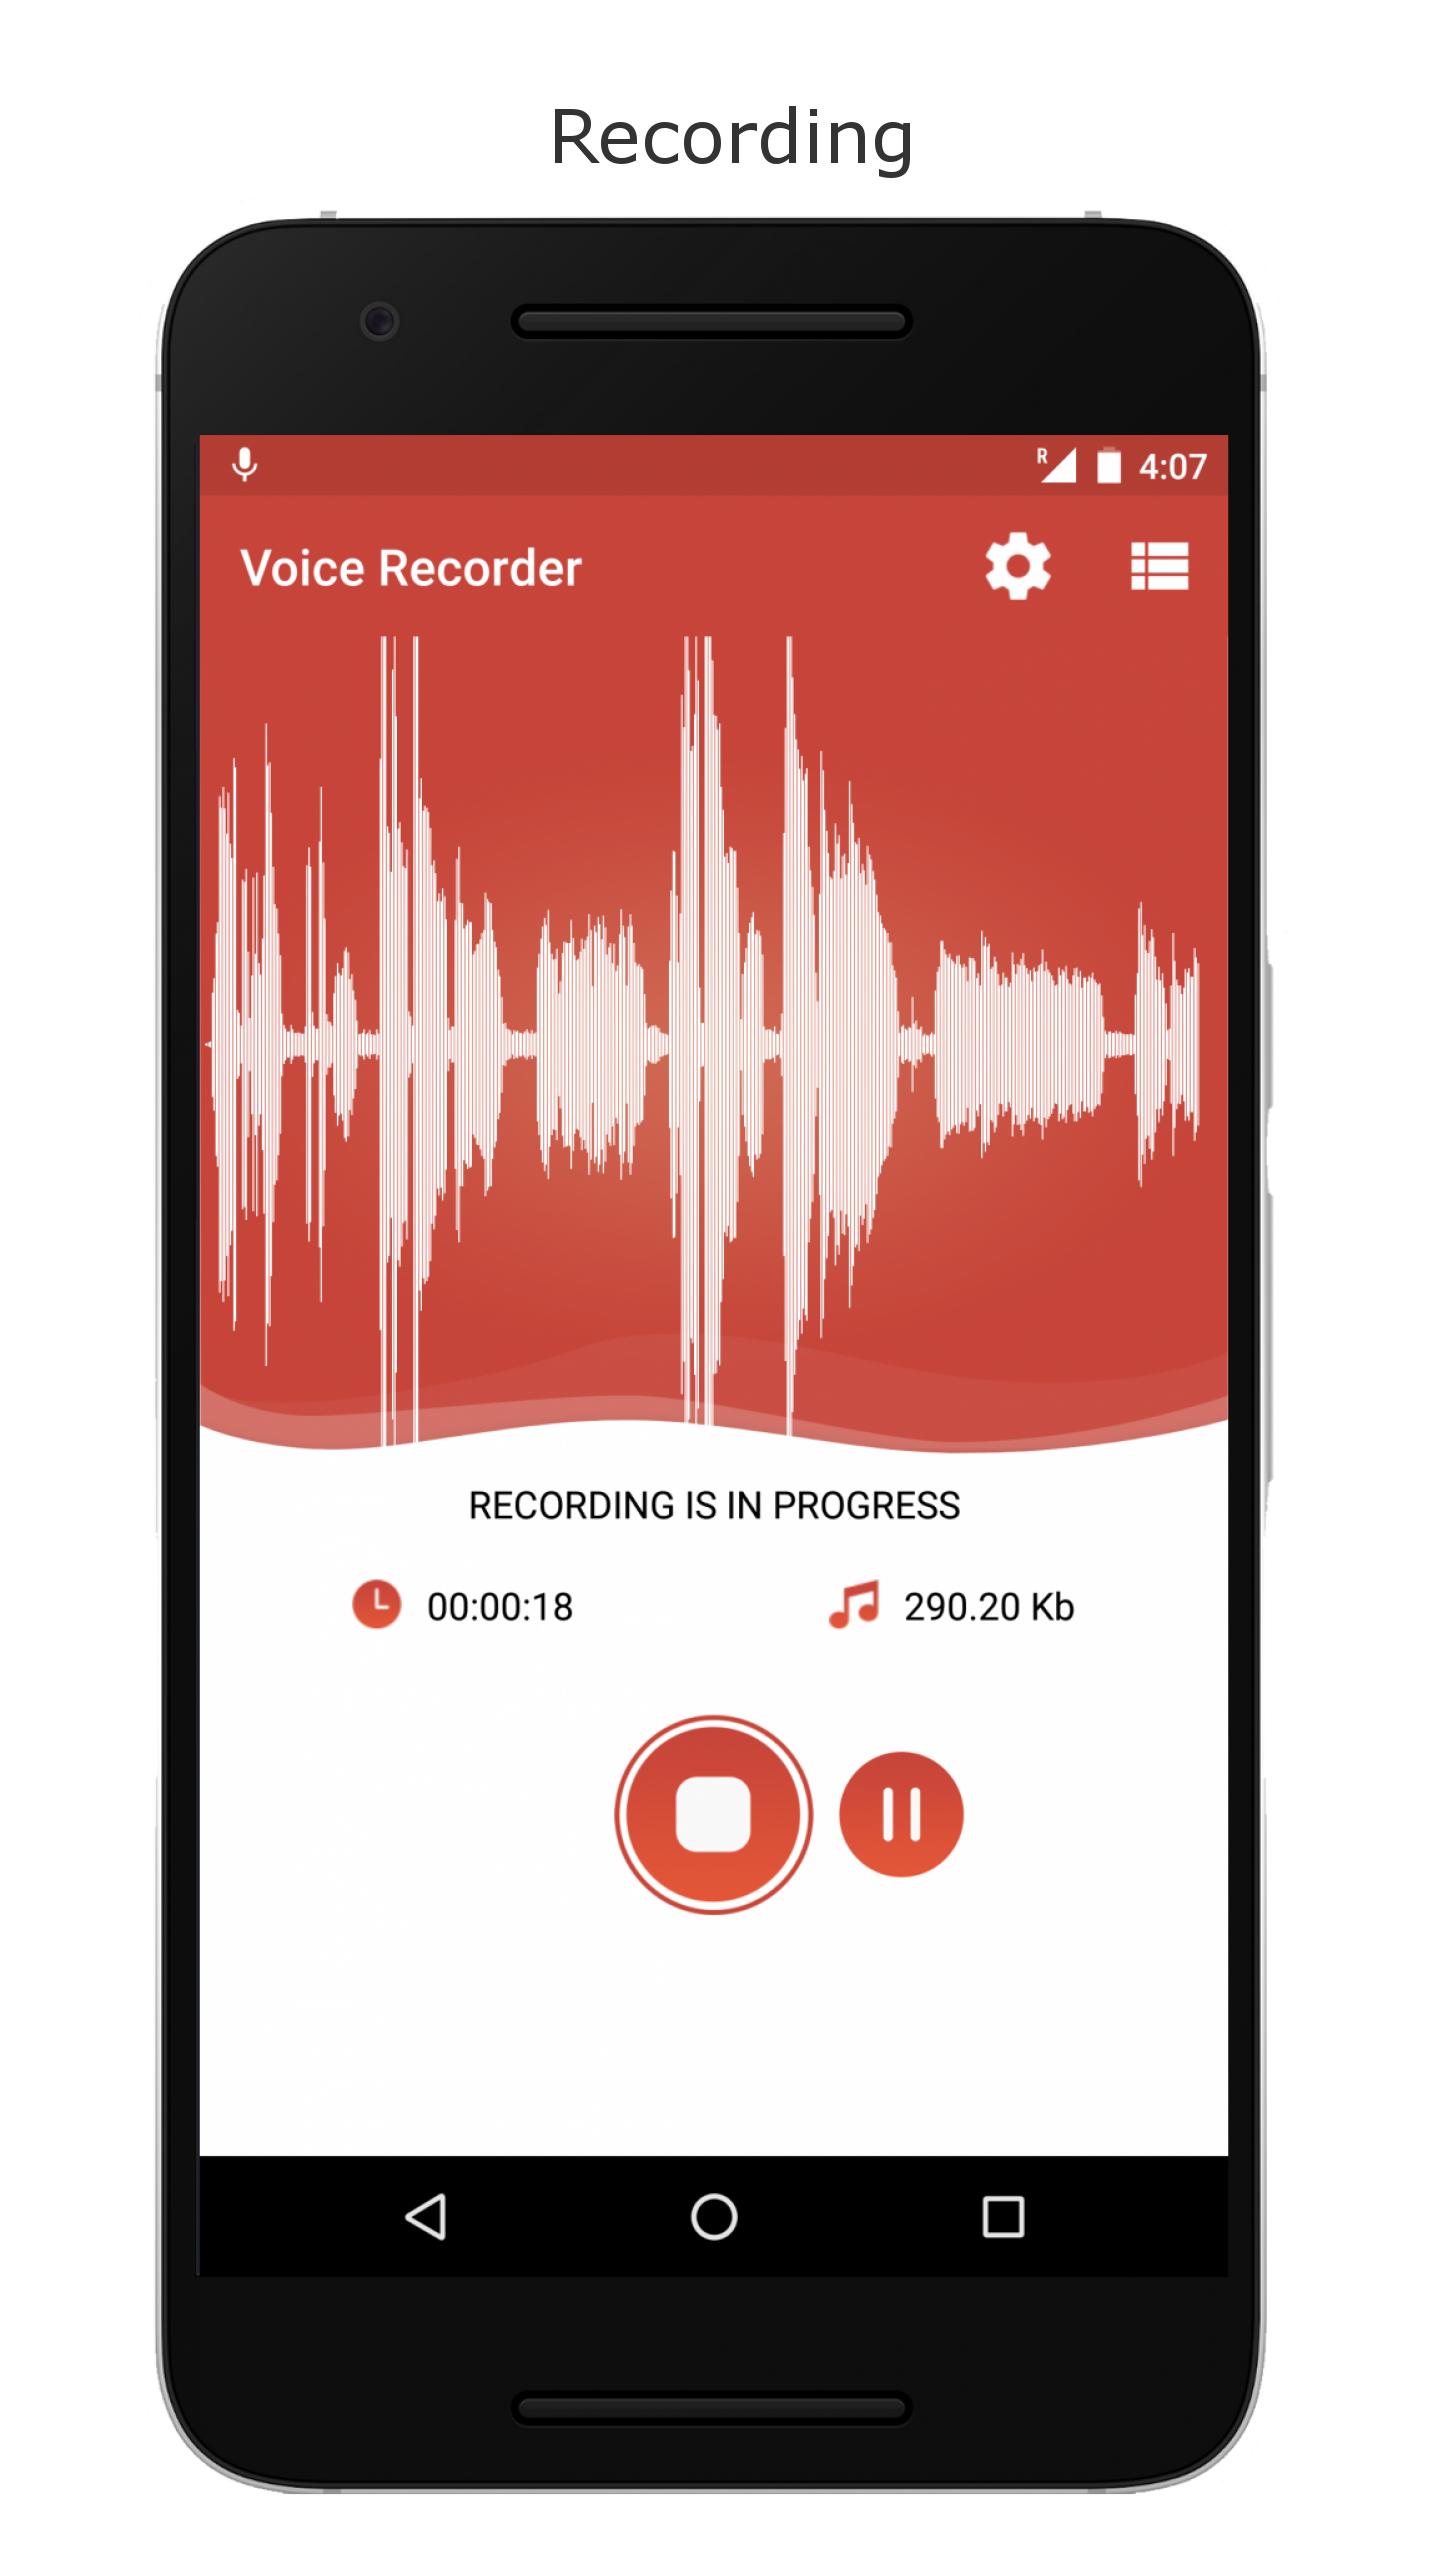 Audio Recorder приложение. Voice Recorder. Диктофон на андроид. Диктофон для записи музыки и голоса. Установить диктофон на андроид